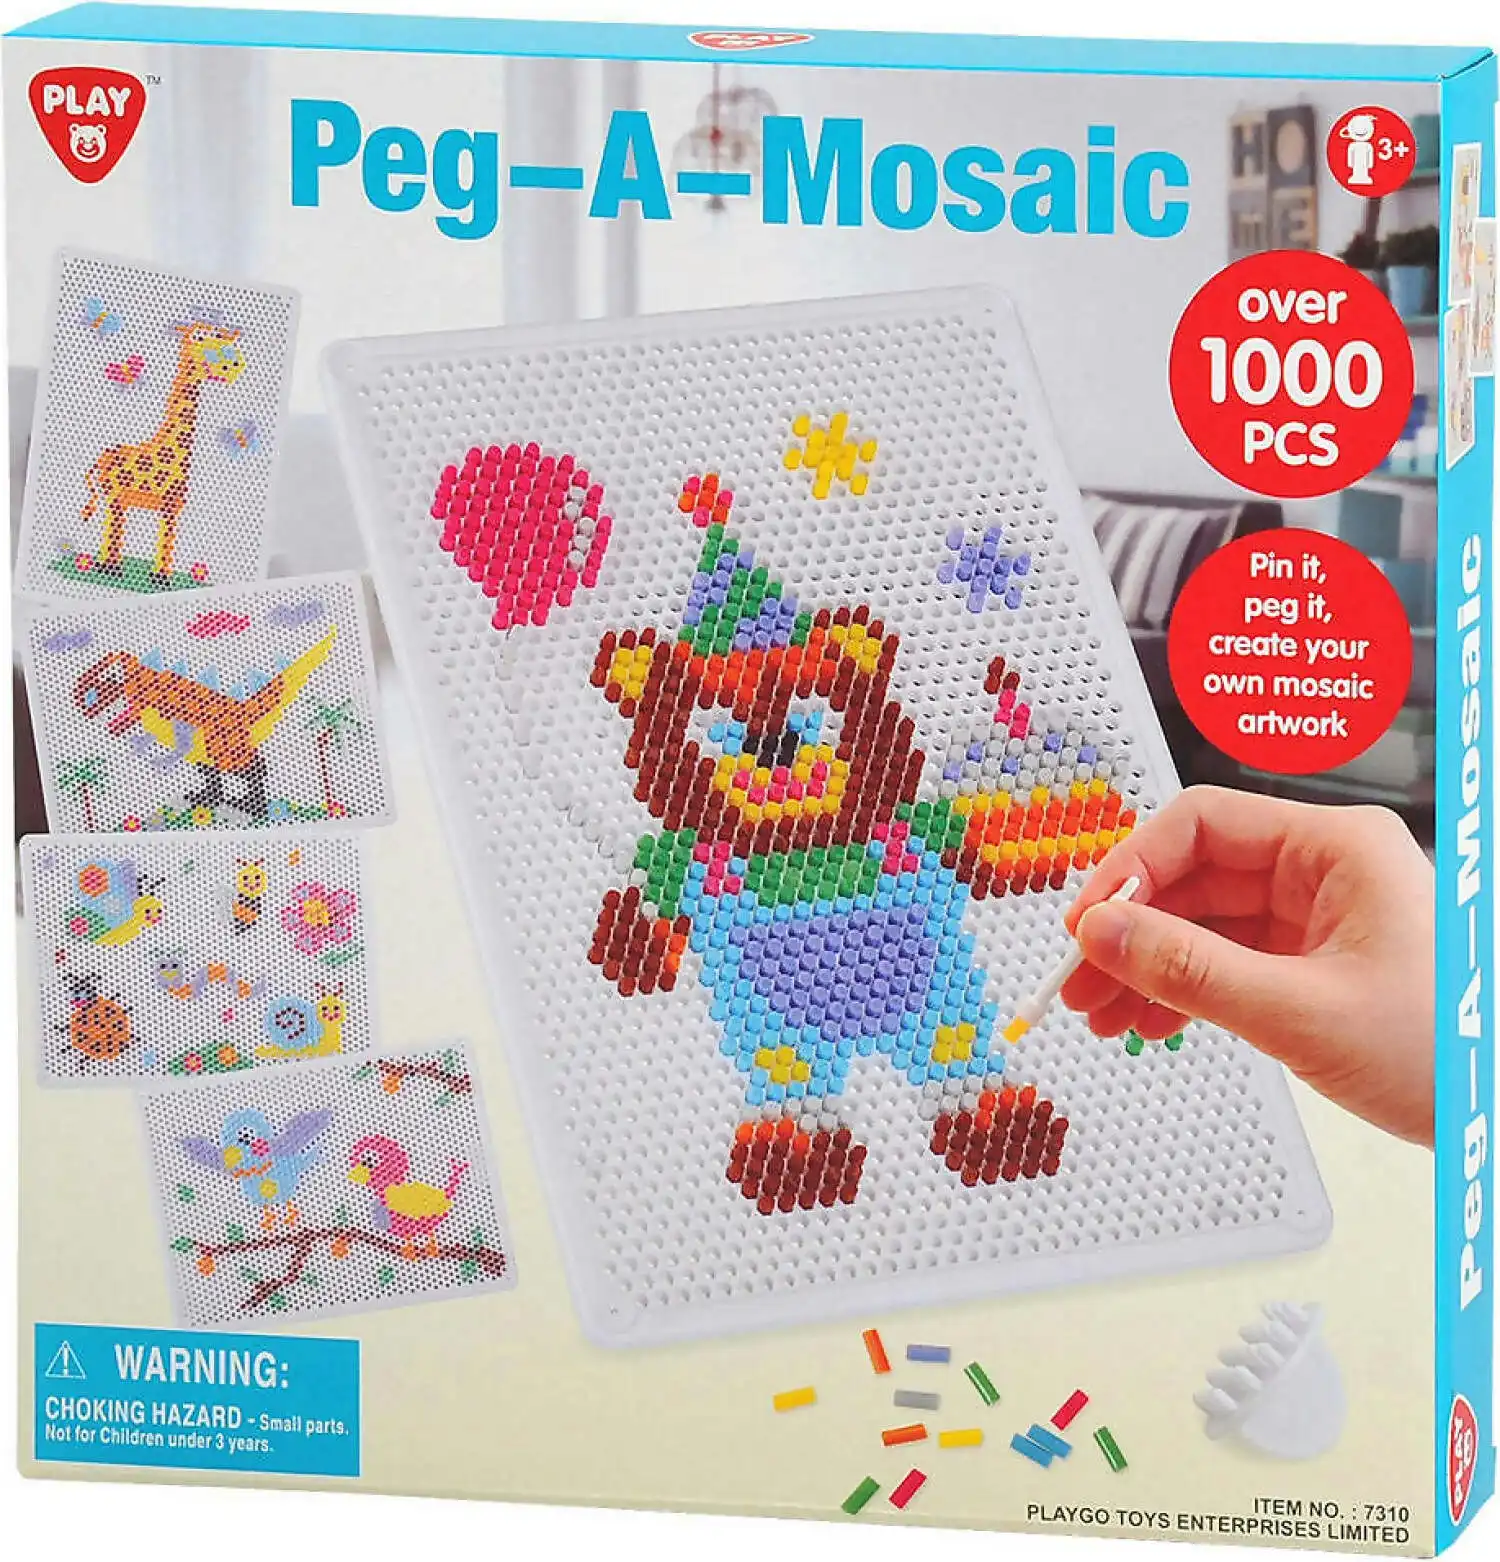 Playgo Toys Ent. Ltd - Peg-a-mosaic